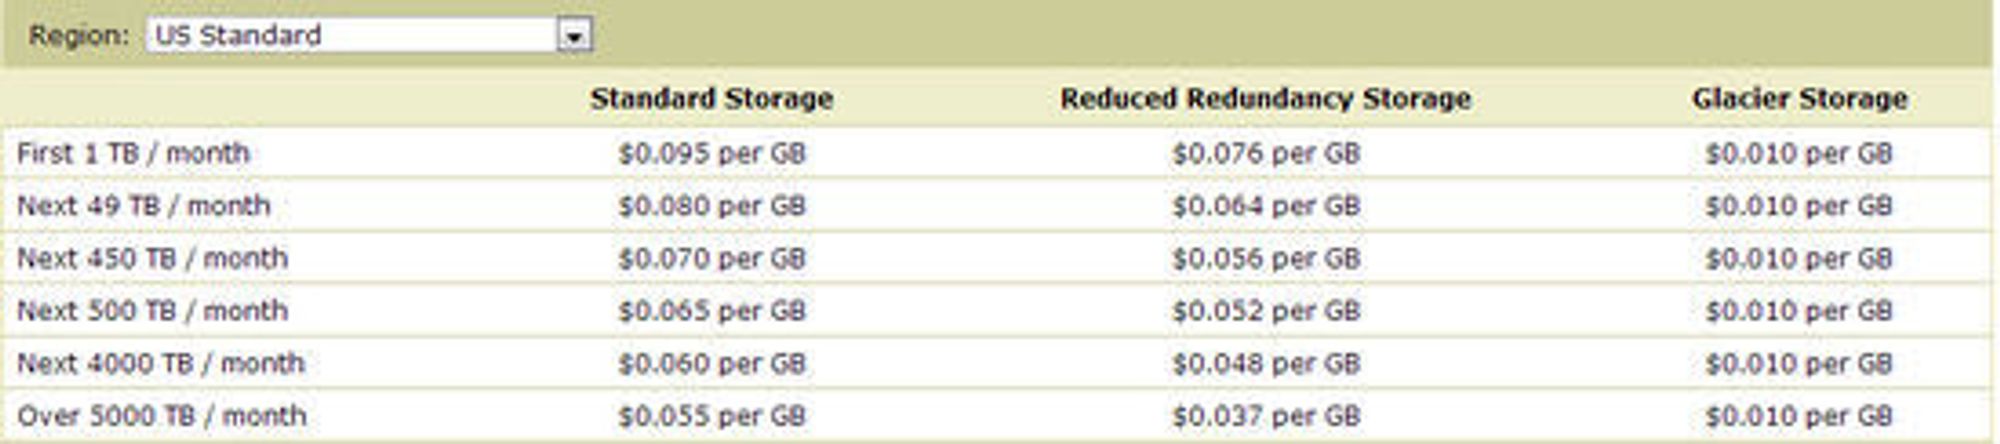 Prisene for Amazon S3 som gjelder fra den 1. desember 2012. Glacier Storage er en tjeneste hvor aksesstiden kan være på flere timer.